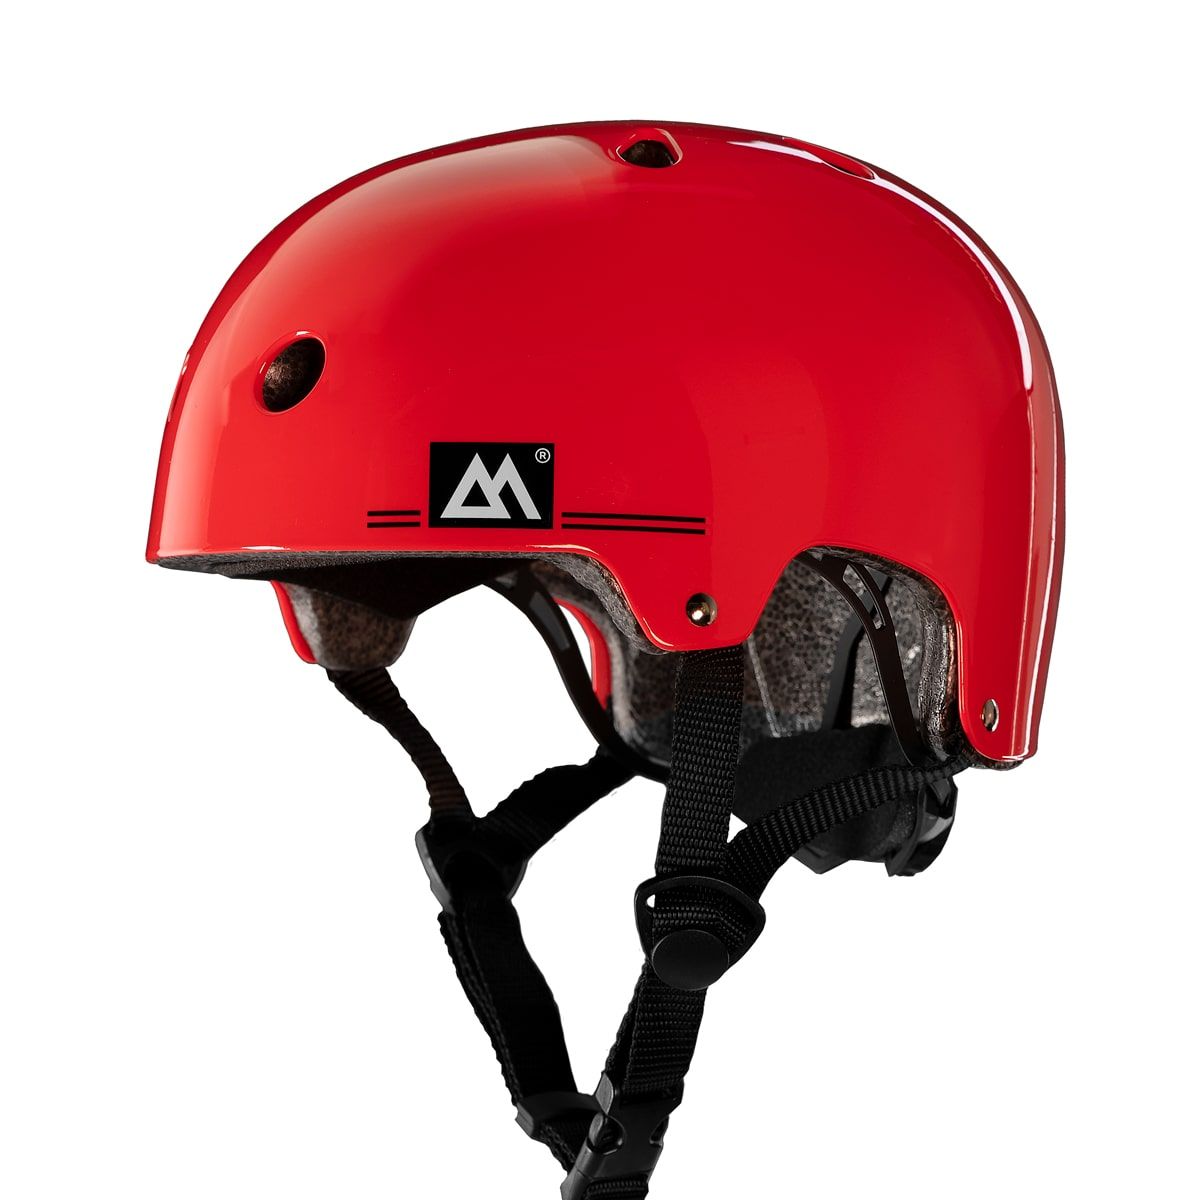 Magneto Kids Skateboard Helmet - Red 1